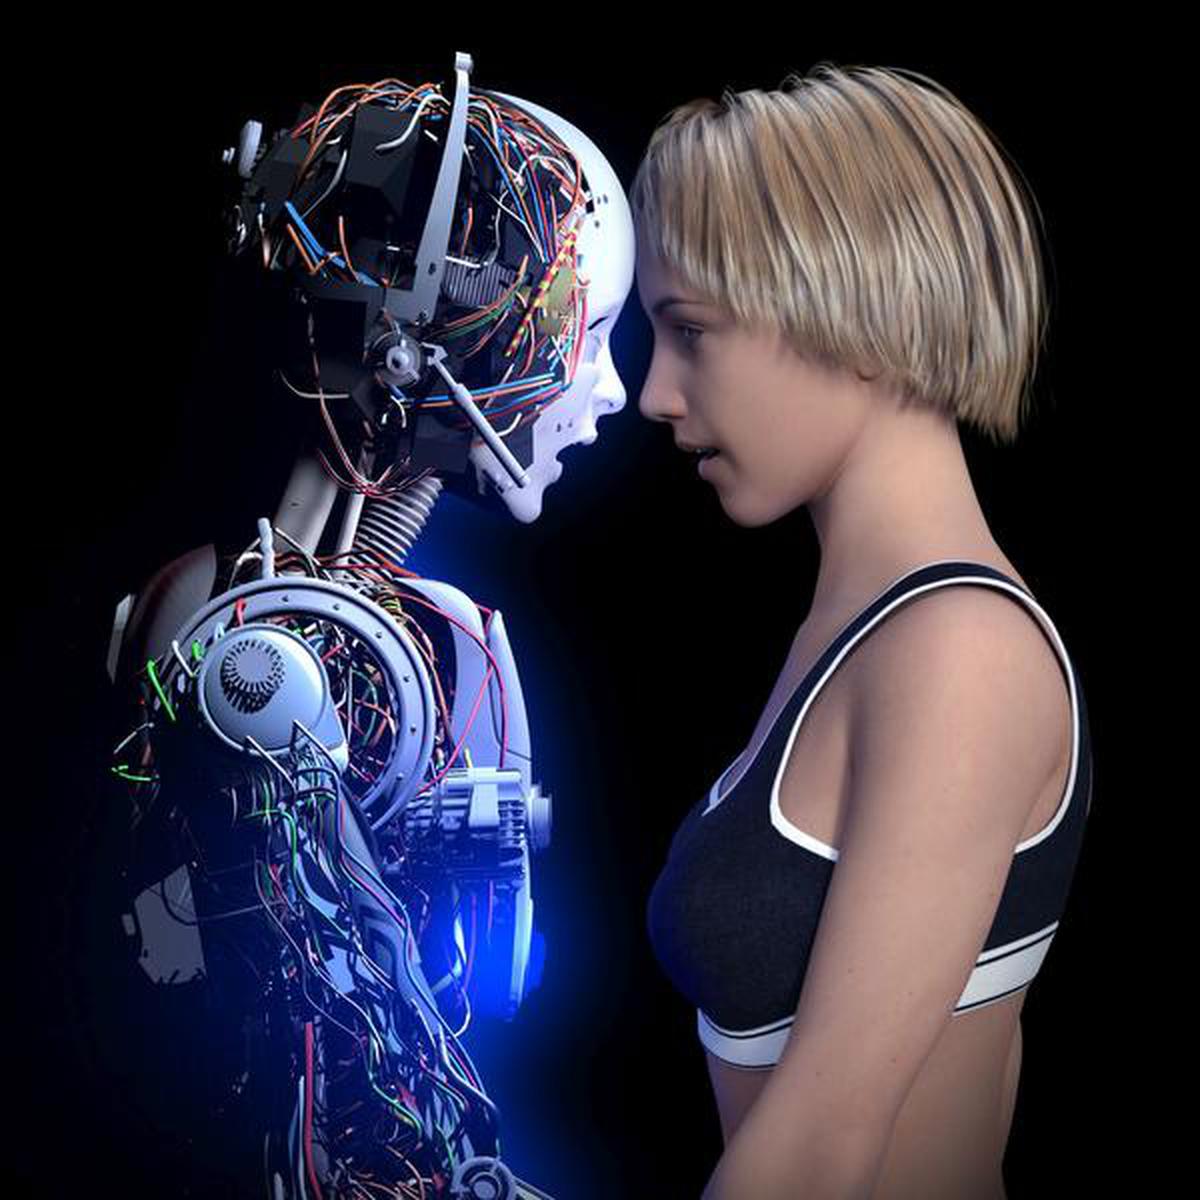 Любовь роботы 3 на русском. Любовь и роботы. Отношения будущего. Киборг и человек любовь. Искусственный интеллект и человек любовь.